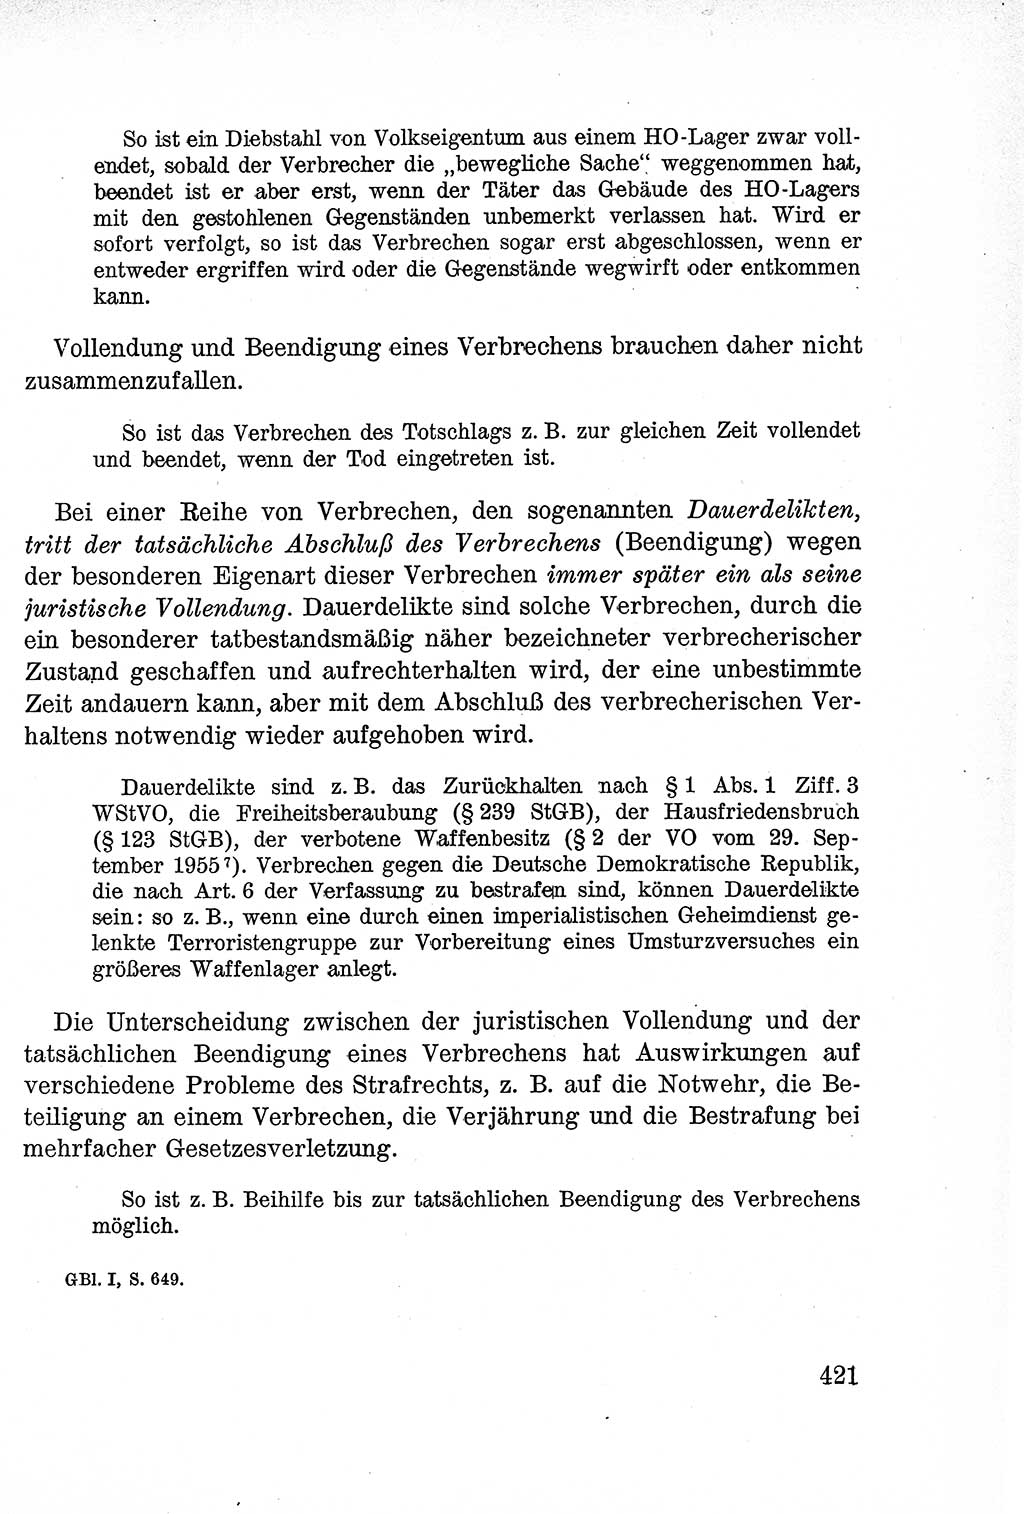 Lehrbuch des Strafrechts der Deutschen Demokratischen Republik (DDR), Allgemeiner Teil 1957, Seite 421 (Lb. Strafr. DDR AT 1957, S. 421)